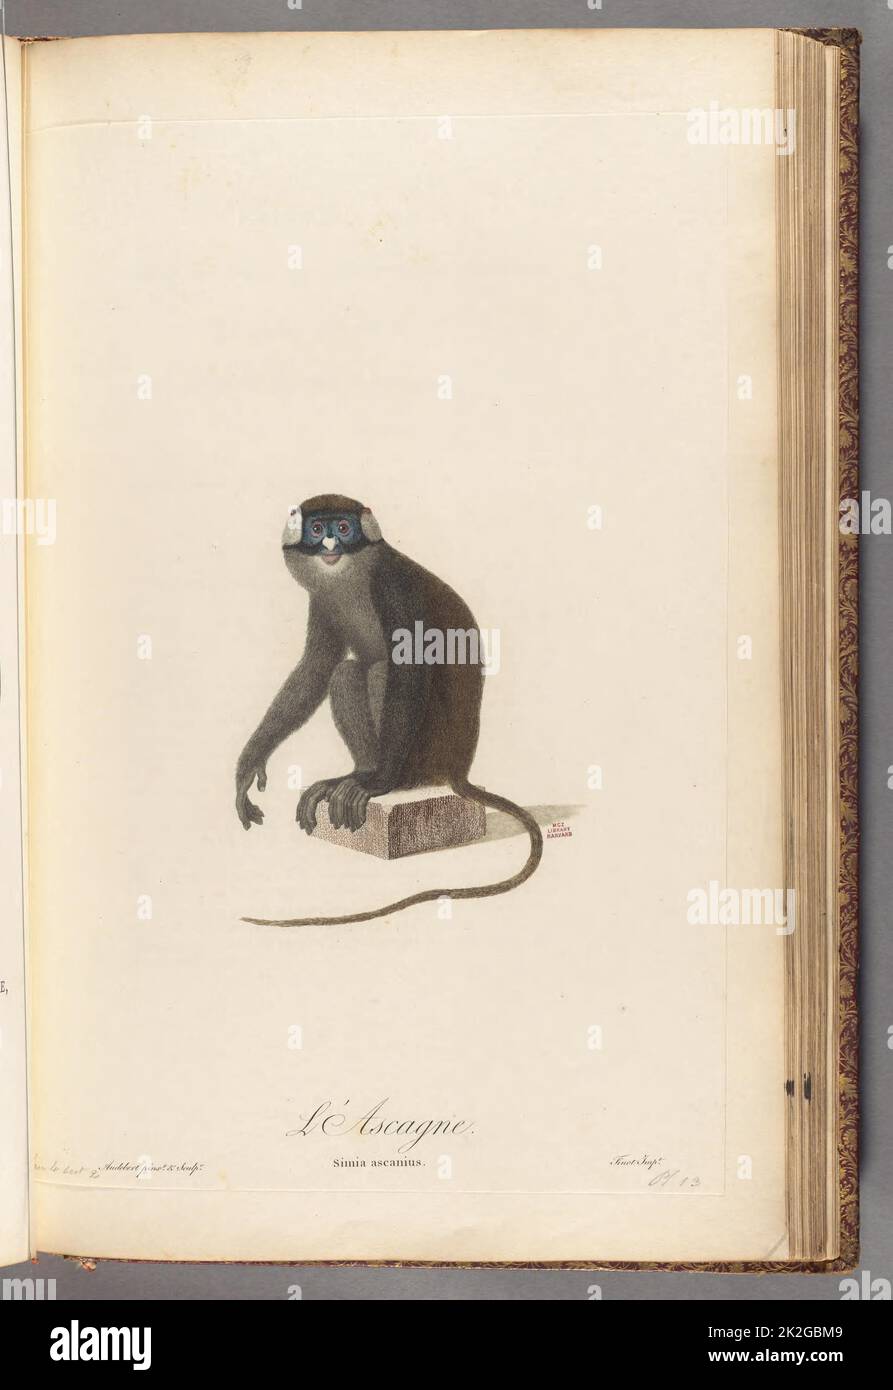 Histoire naturelle des singes et des makis Paris, L'an VII (1797). https://biodiversitylibrary.org/page/58948805 Foto de stock